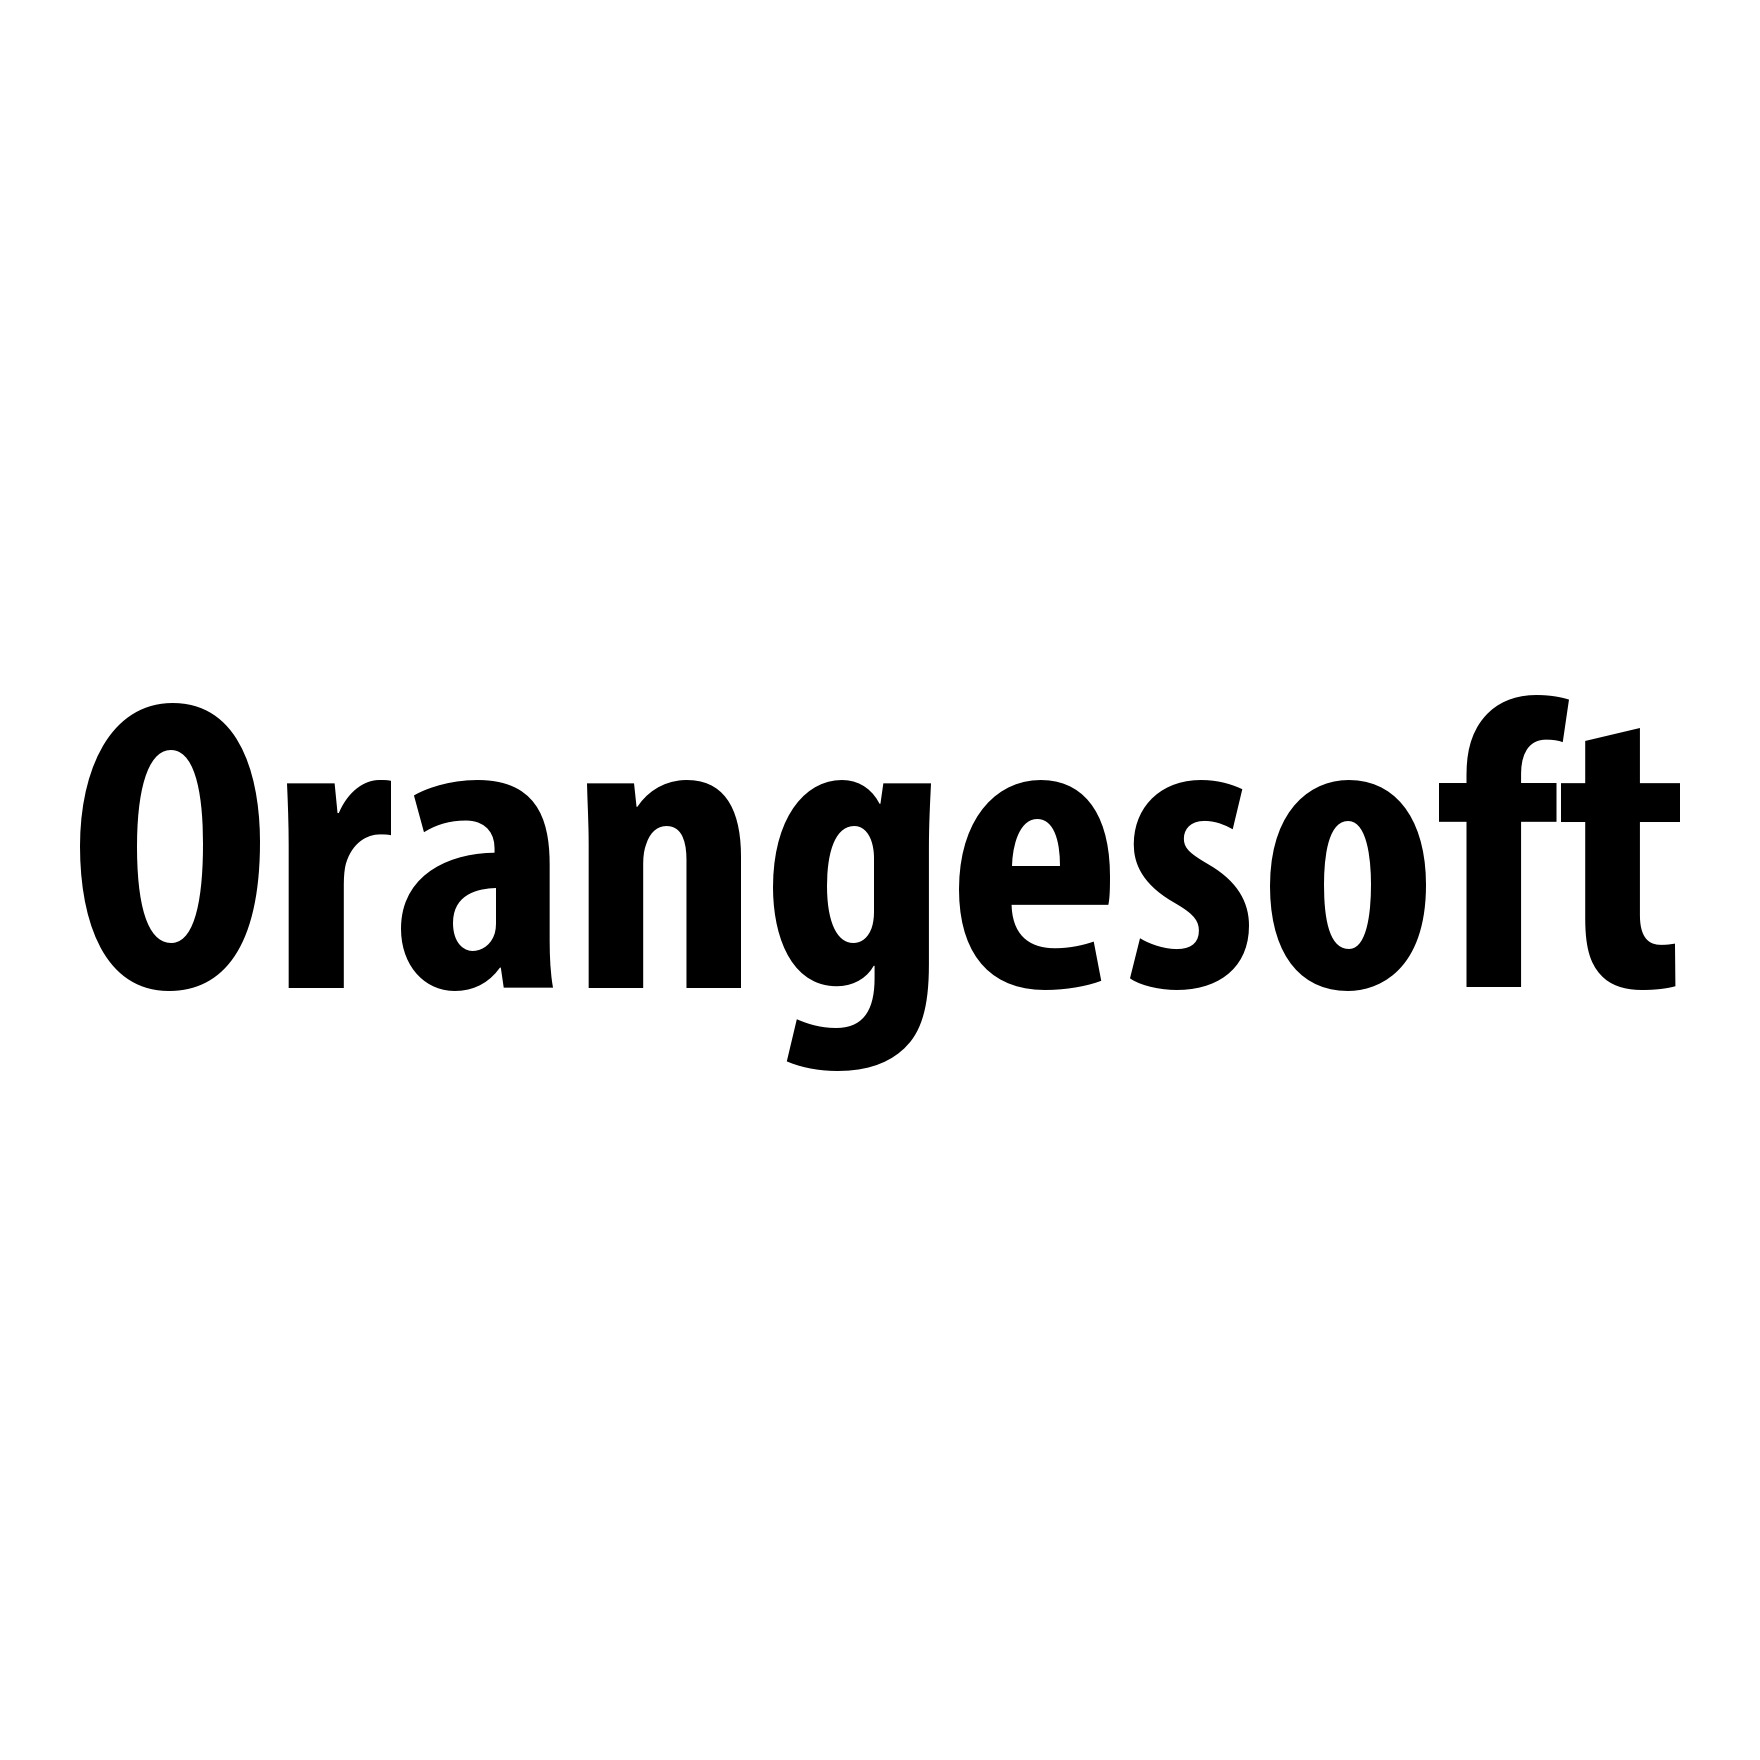 Orangesoft top fintech software development companies